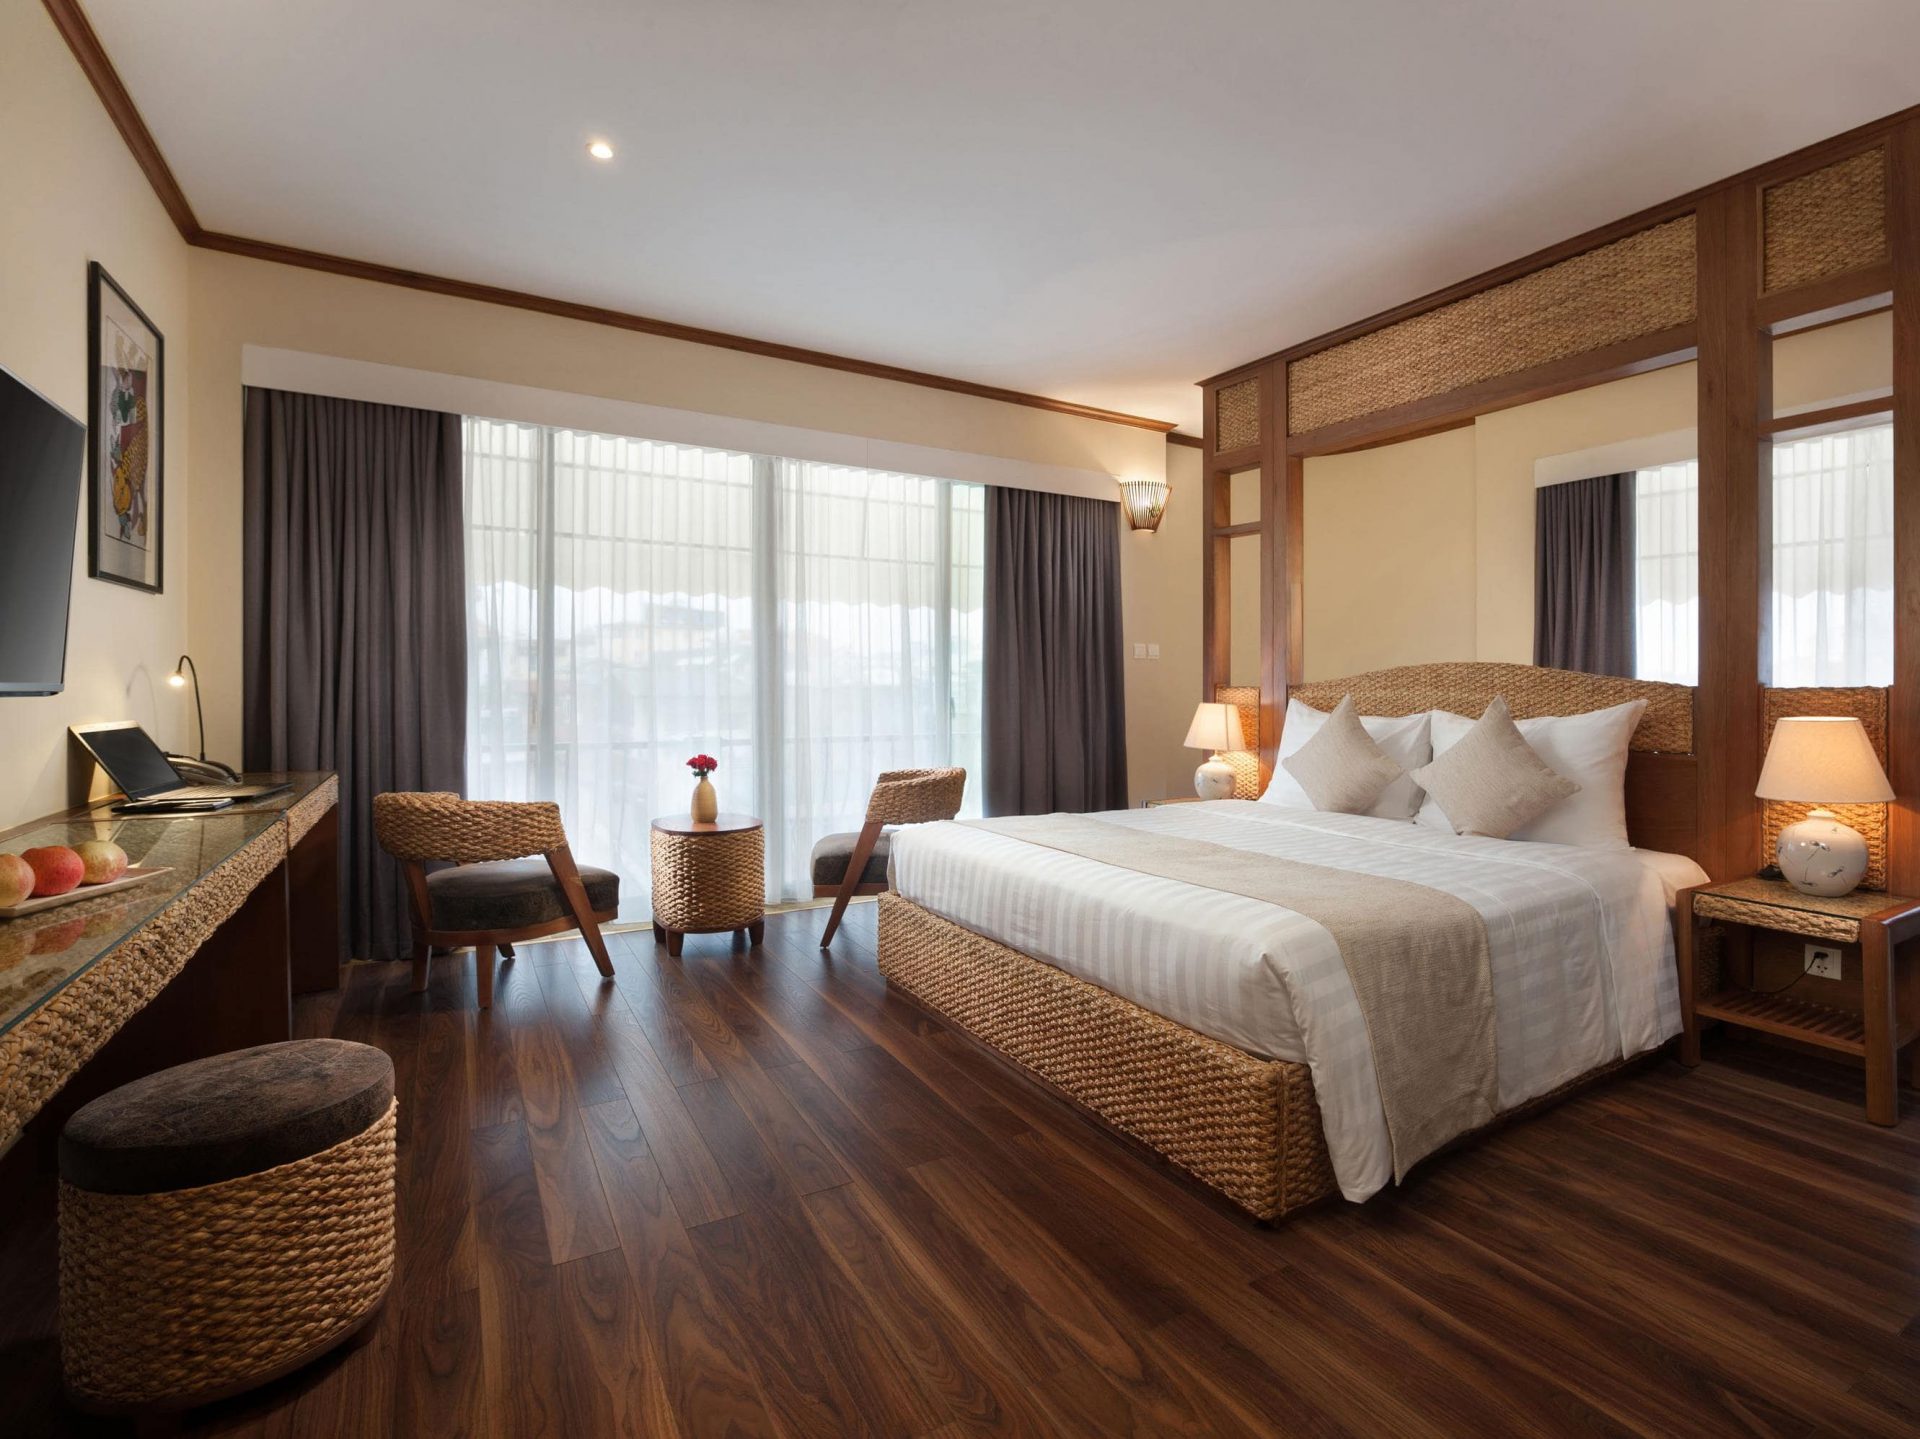 Một khách sạn mang phong cách thuần Việt nhưng được thiết kế hài hòa với các tiện nghi và tiêu chuẩn phương Tây